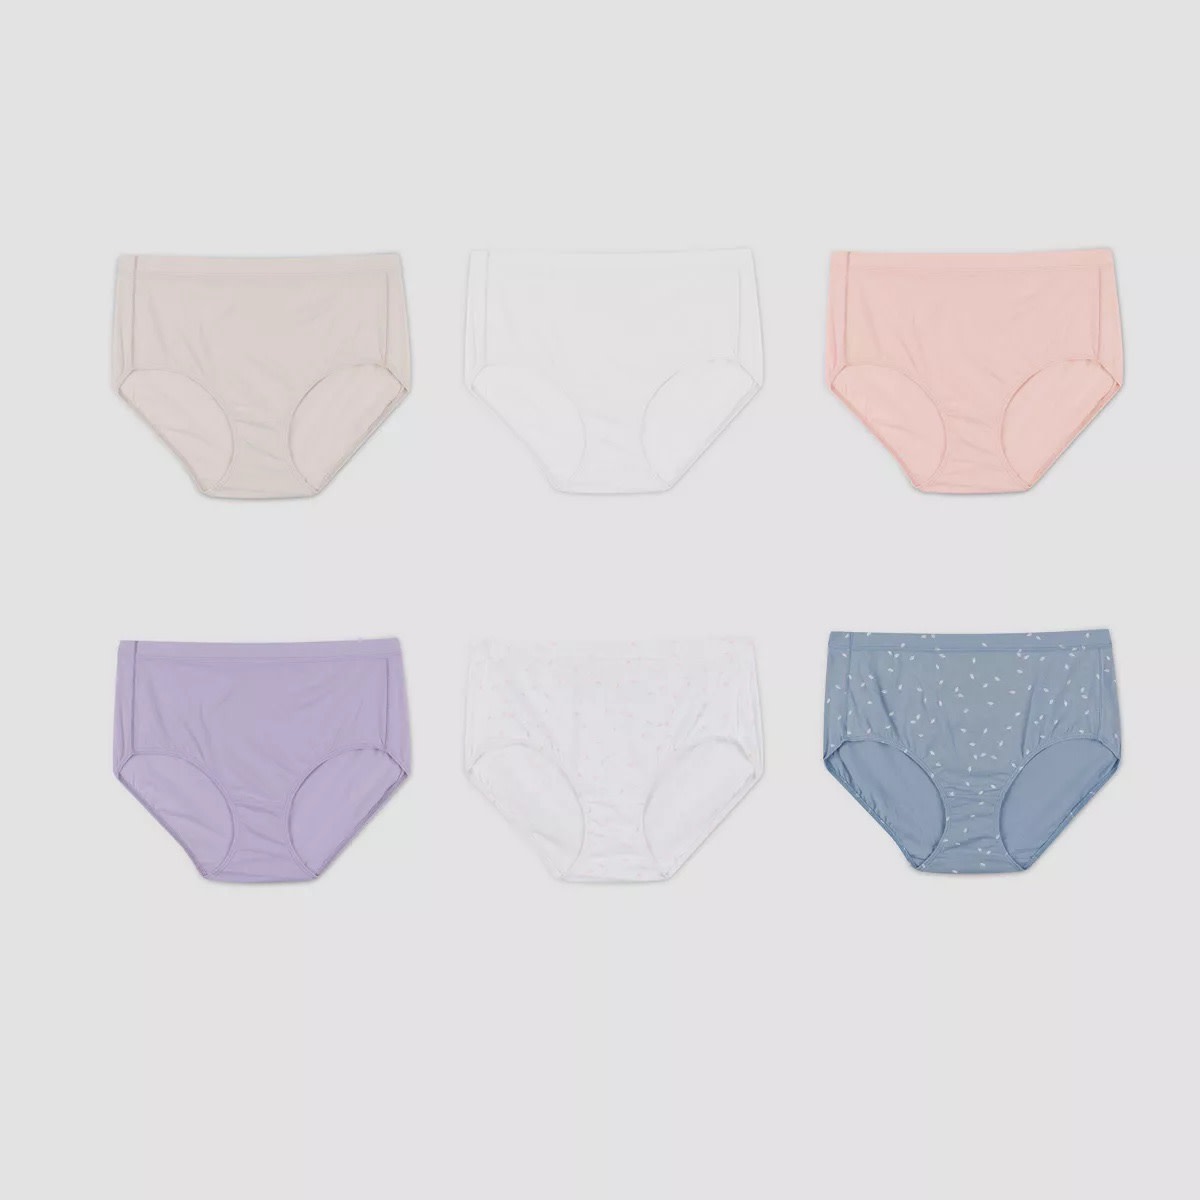 My 6 Favorite Underwear for #NationalUnderwearDay - Sydne Style